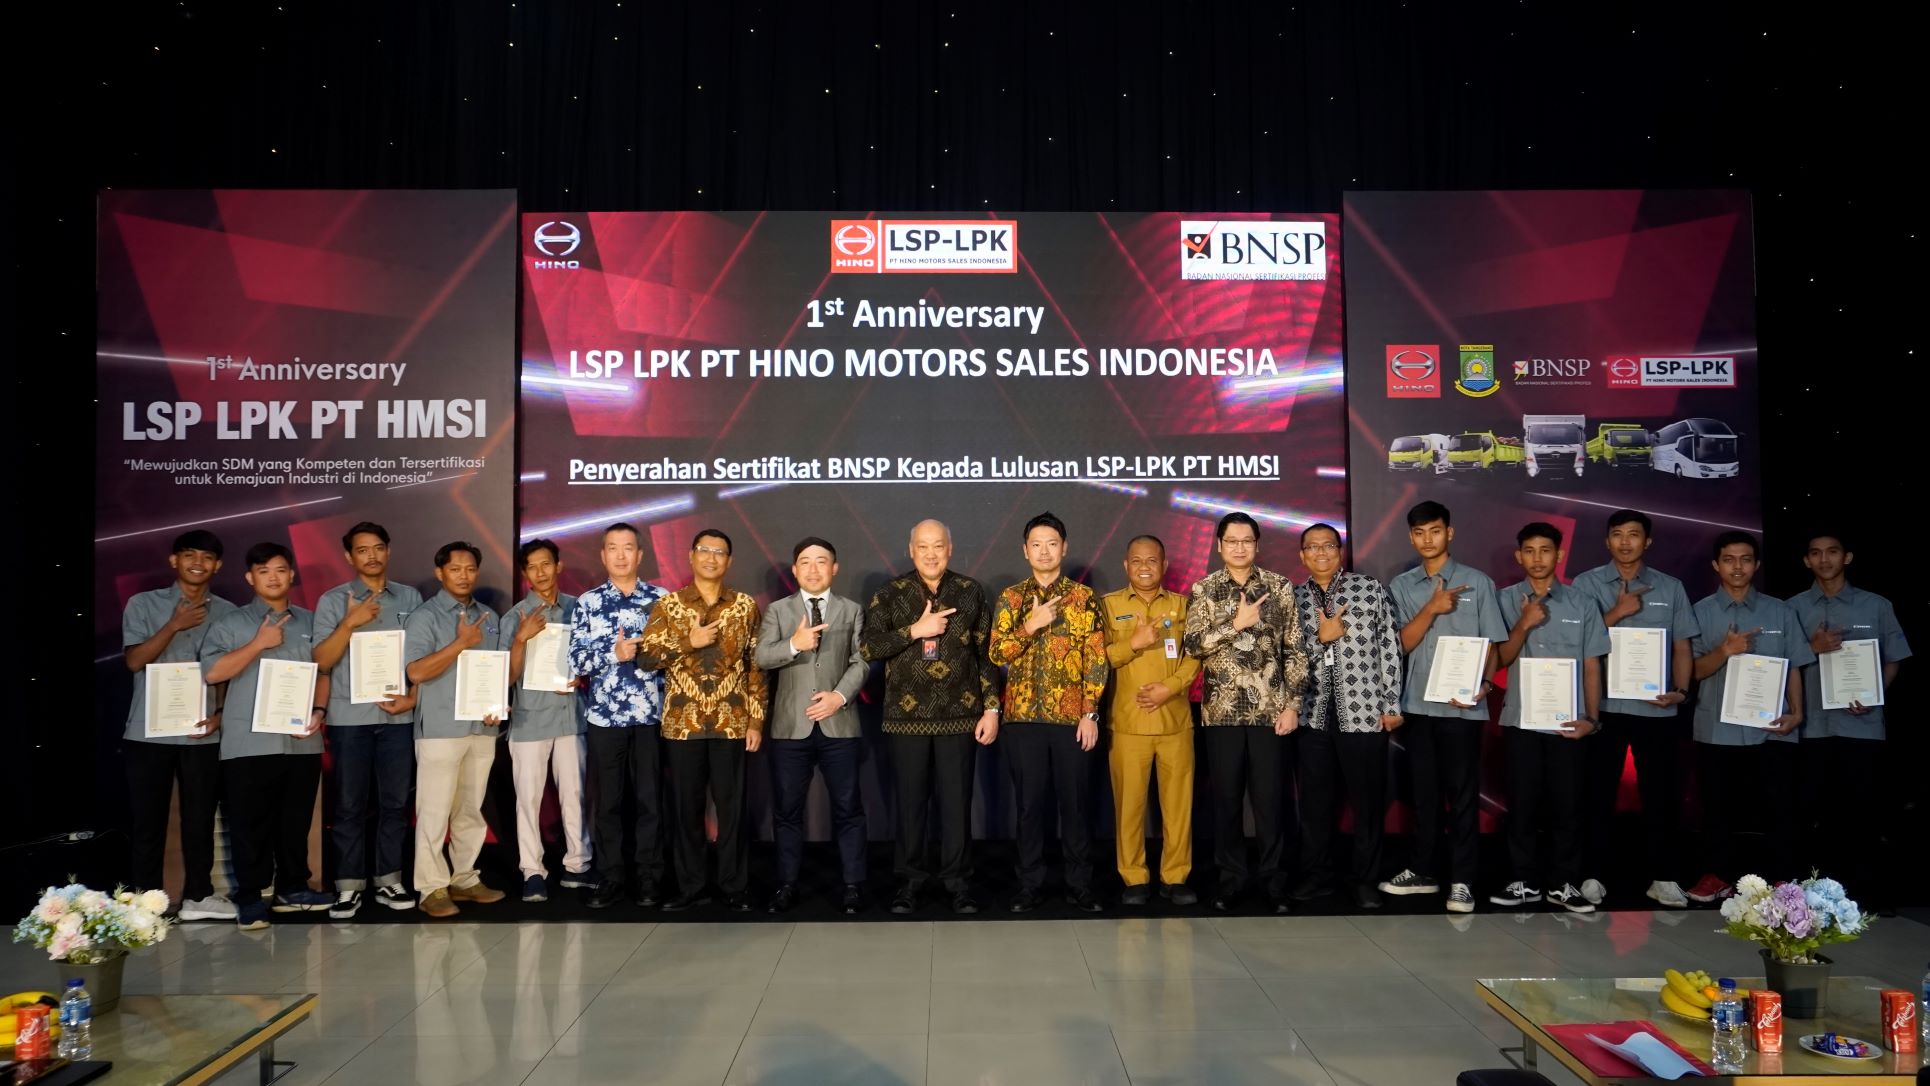 LSP-LPK Hino 1 Tahun Berdiri, Wujudkan SDM Kompeten dan Tersertifikasi Untuk Kemajuan Industri di Indonesia 